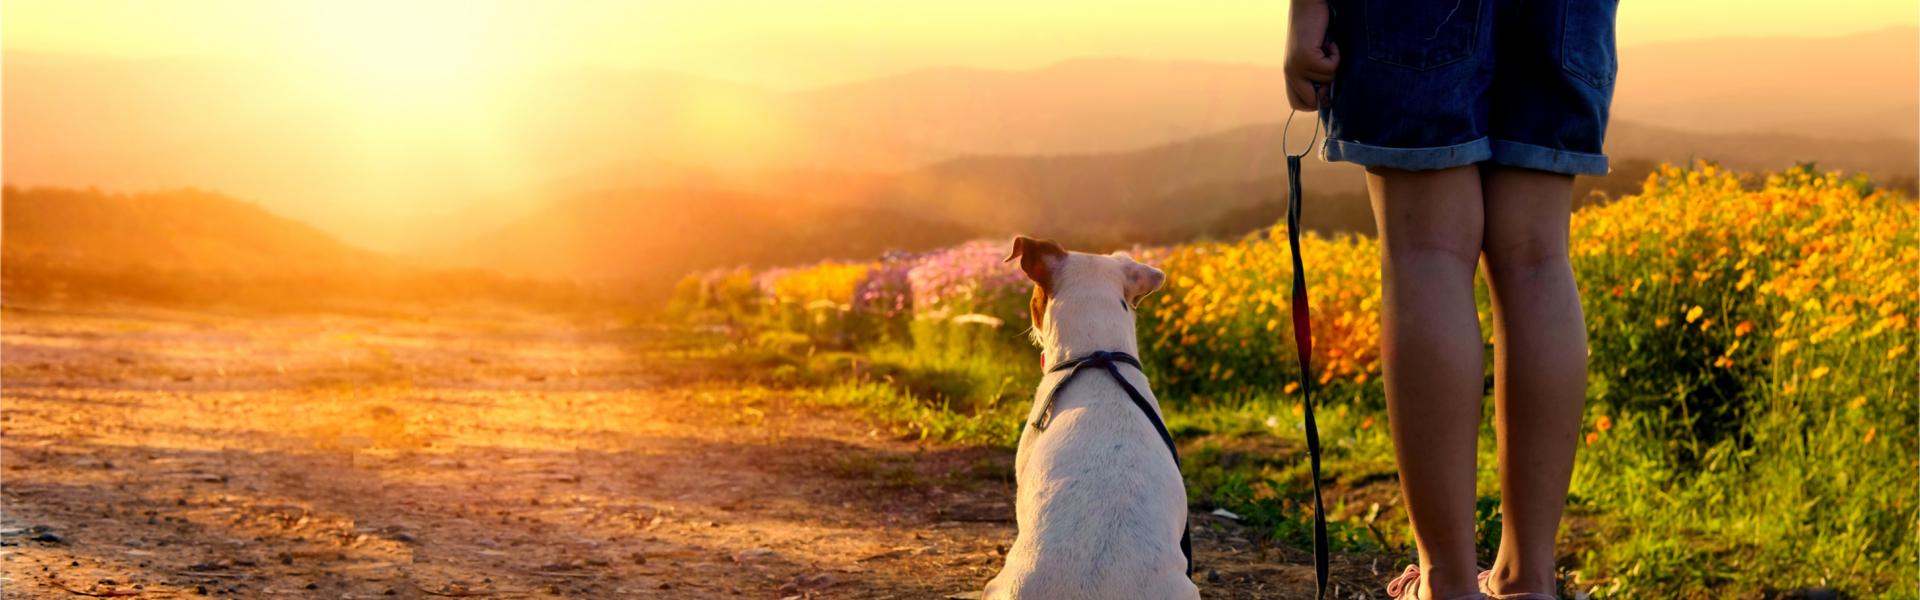 Vacances avec son chien en Grèce - Casamundo